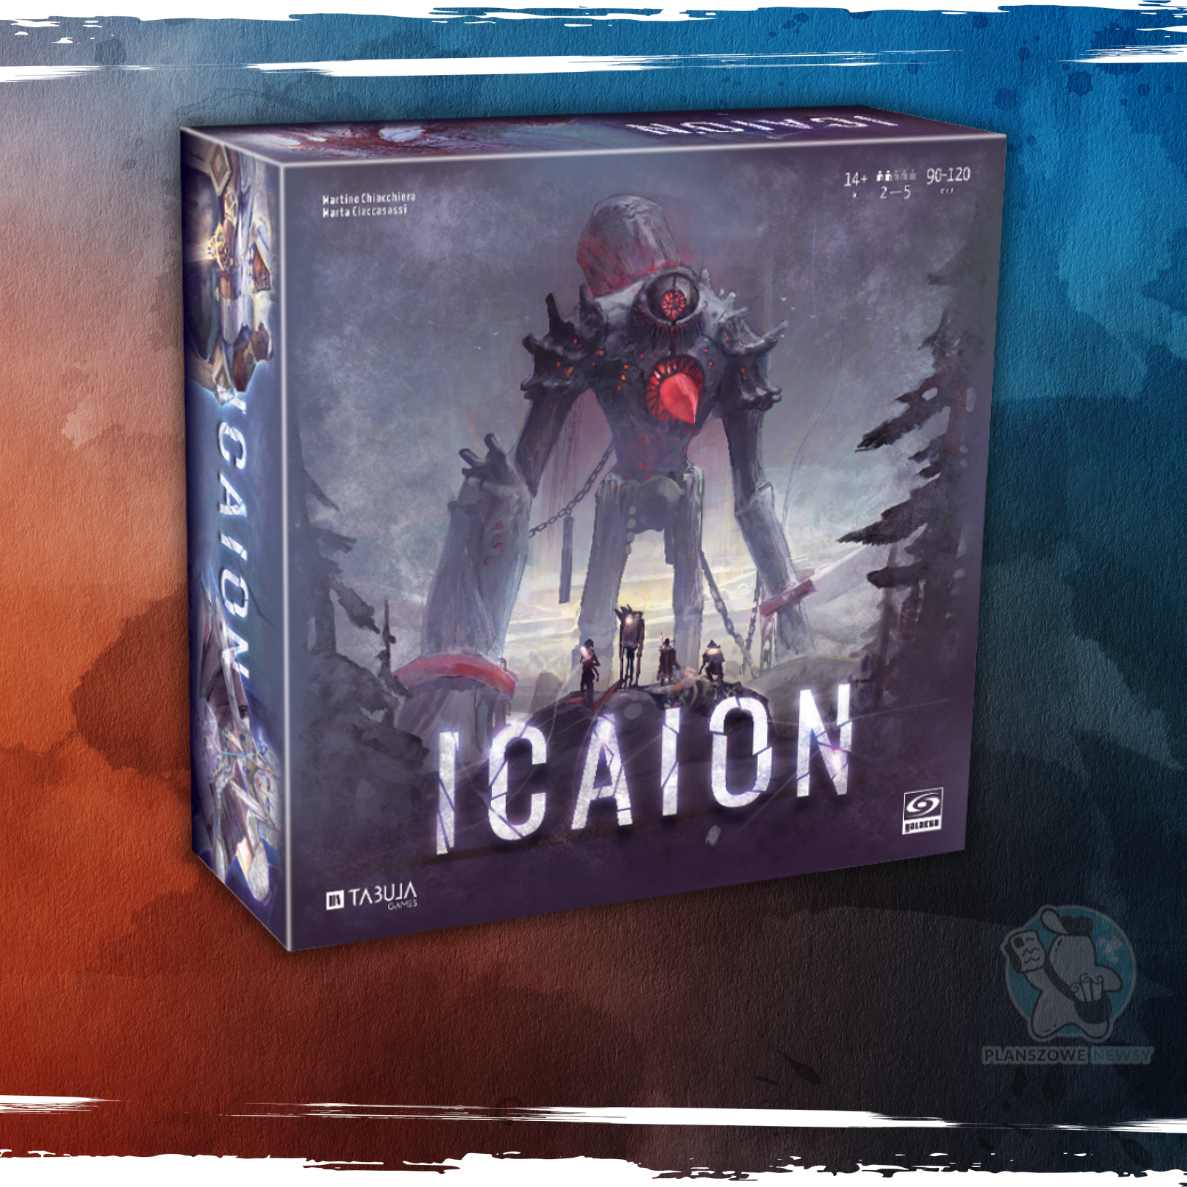 pudełko gry Icaion